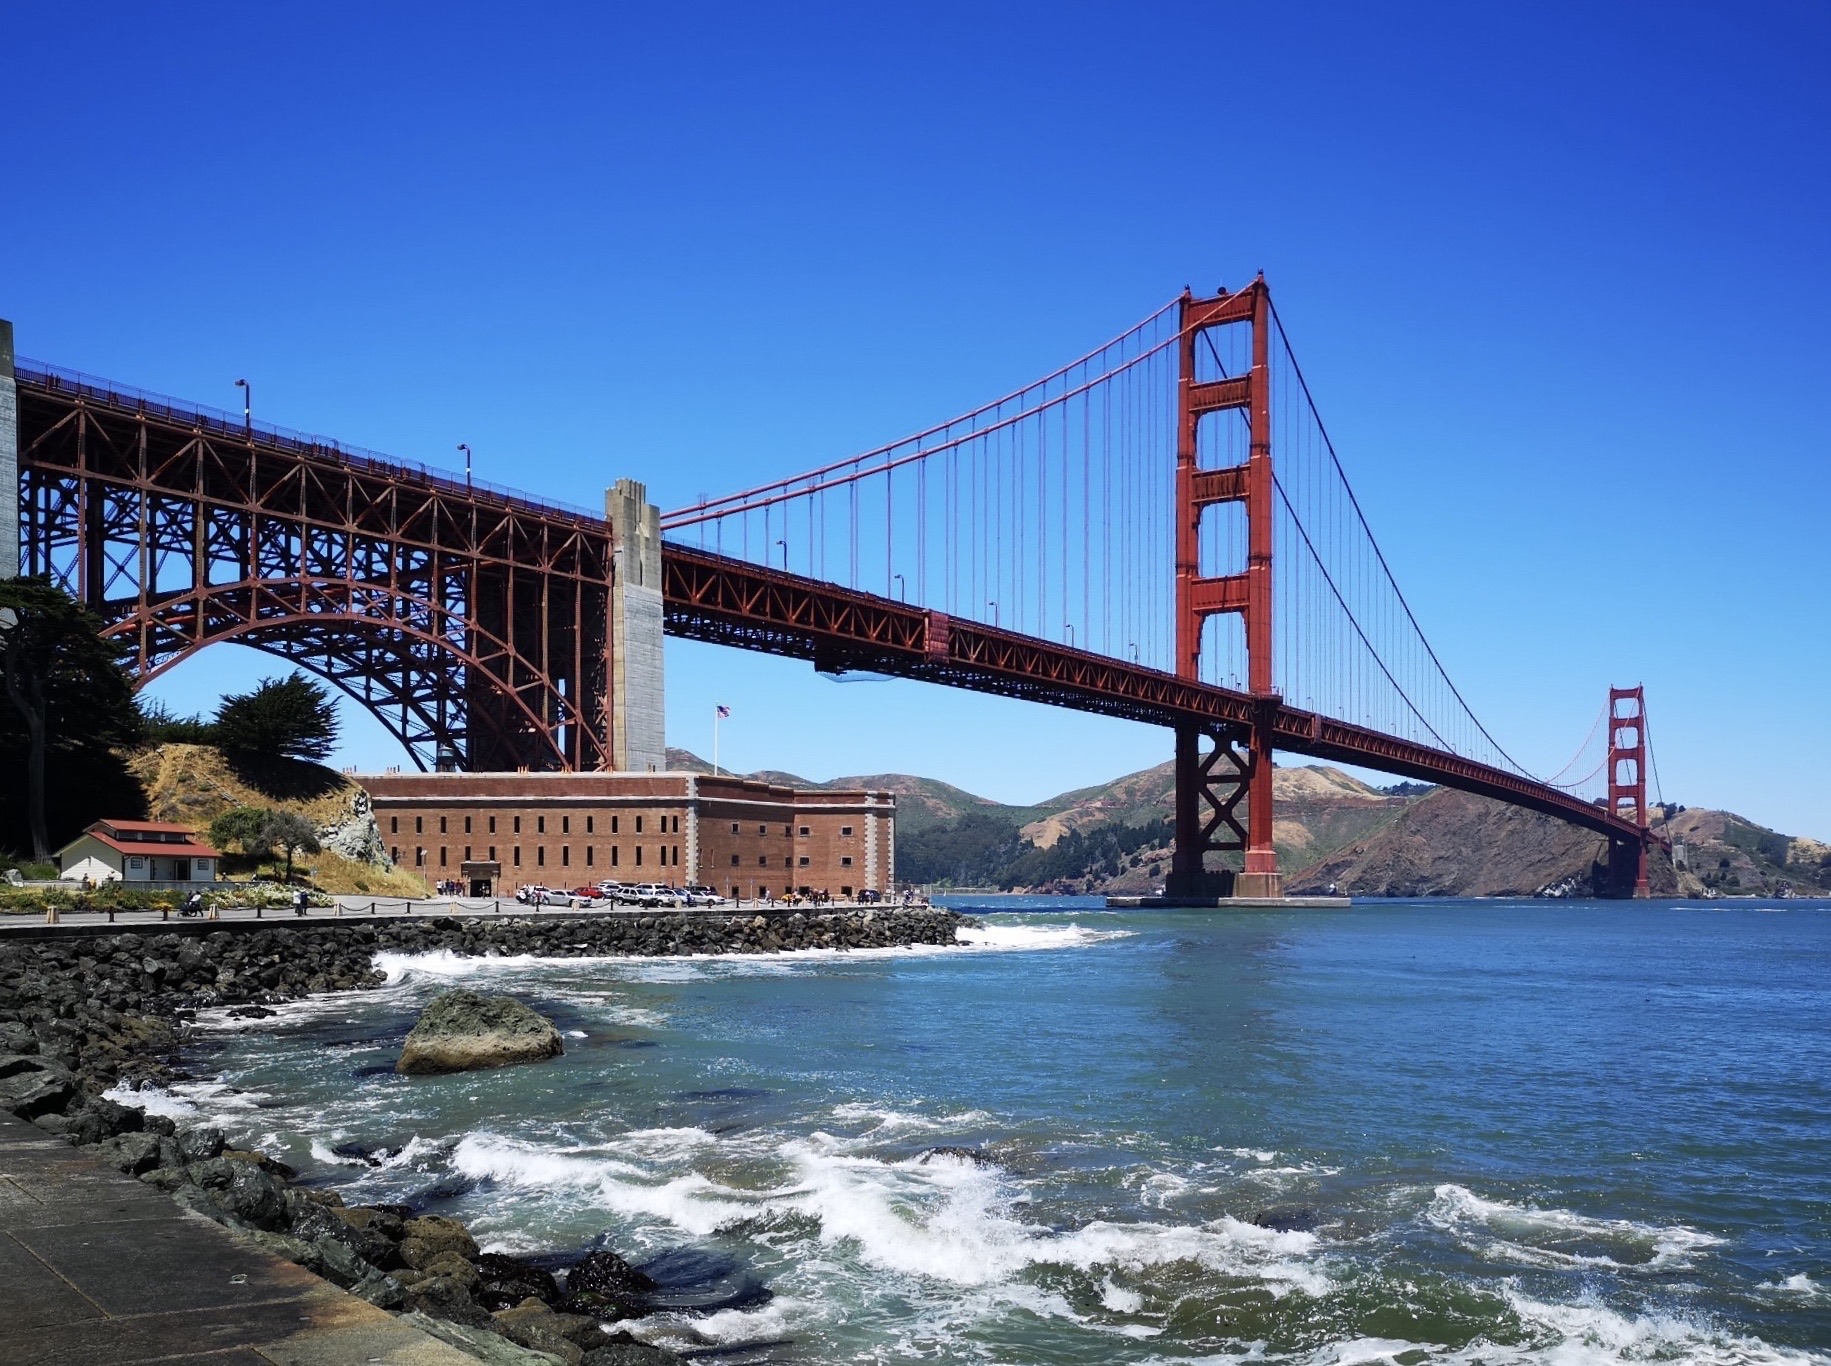 美国加州金门大桥4K风景壁纸-千叶网